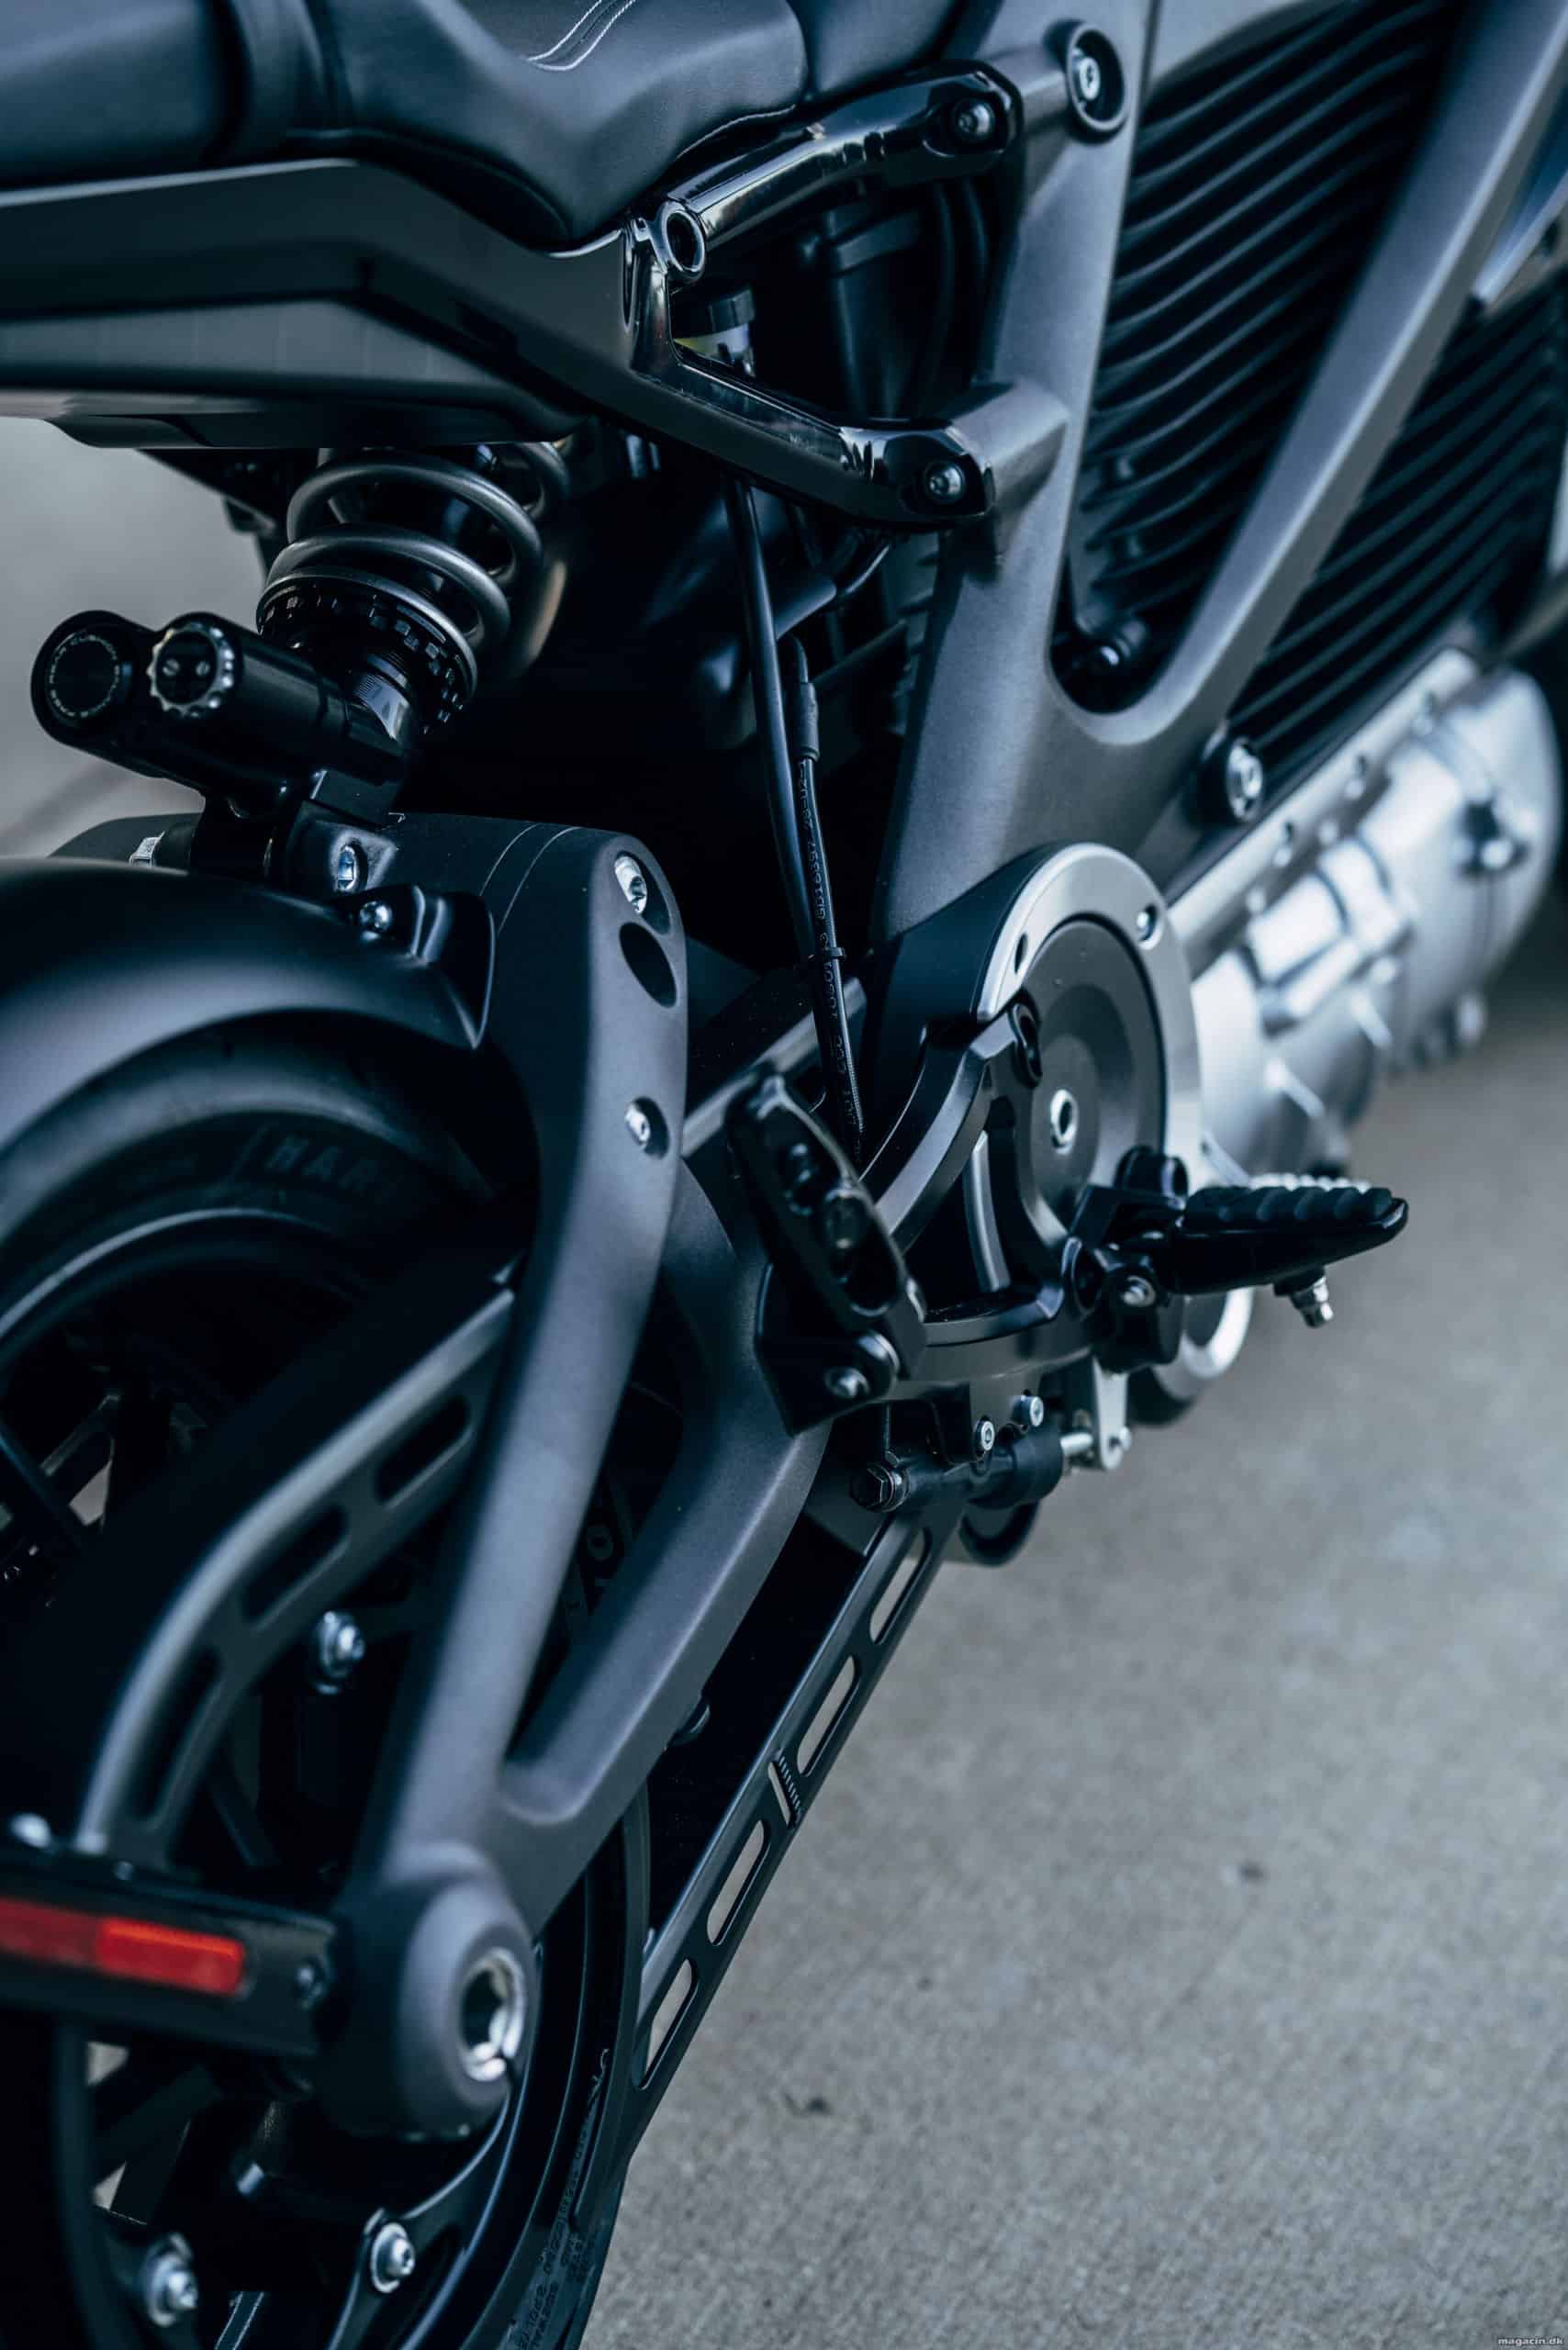 Test: Harley Davidson LiveWire